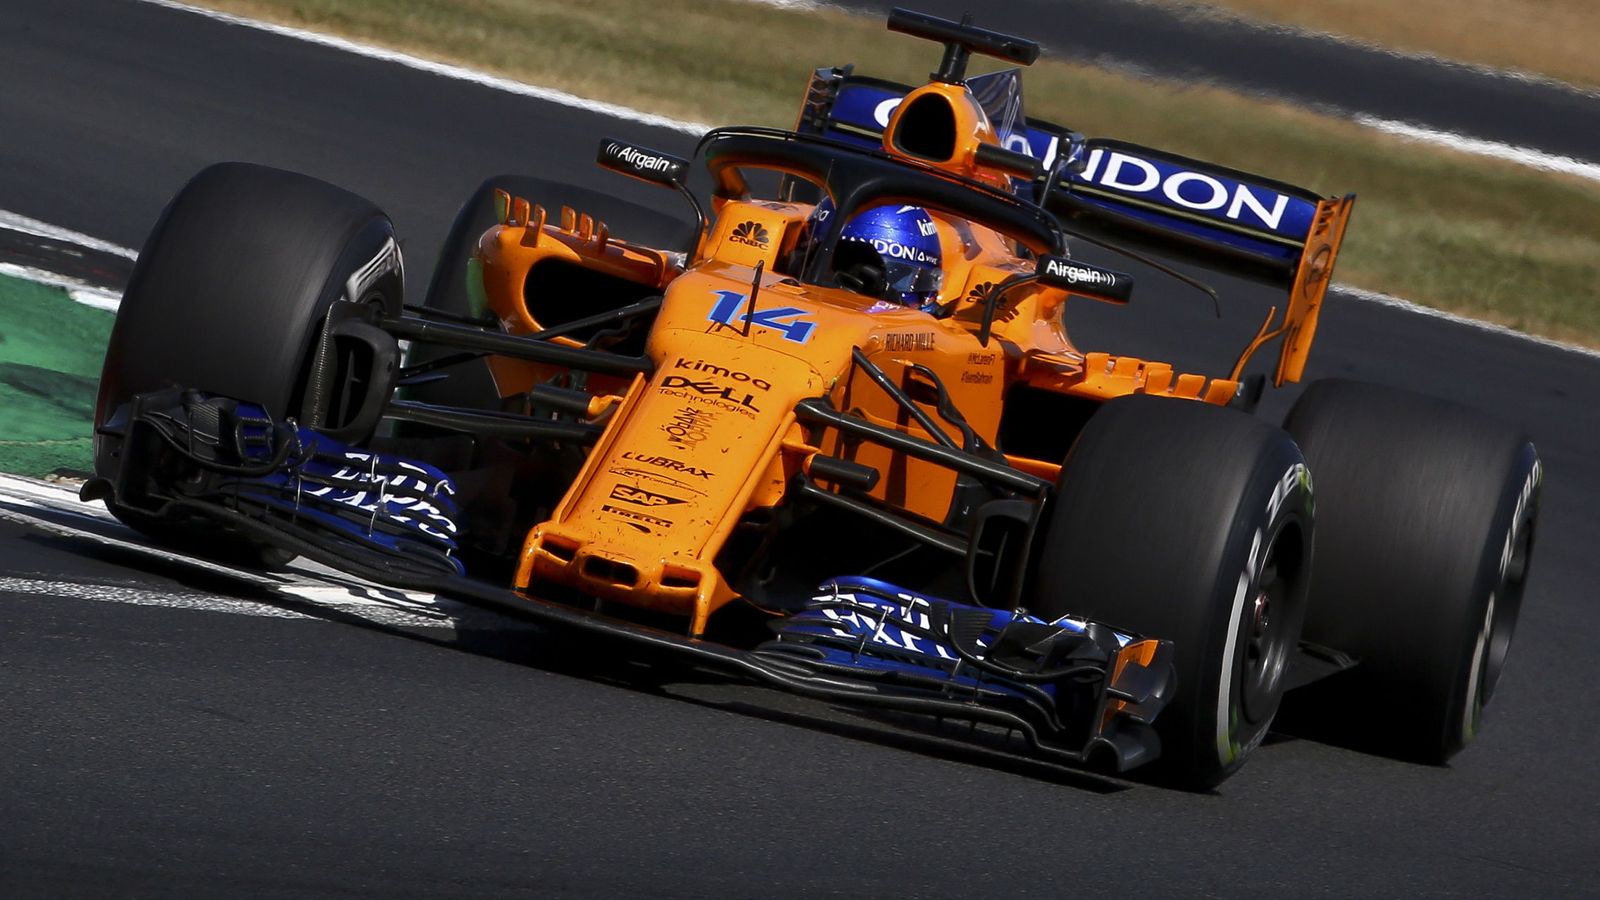 Foto: El McLaren de Fernando Alonso, durante el Gran Premio de Gran Bretaña en el circuito de Silverstone. (EFE)